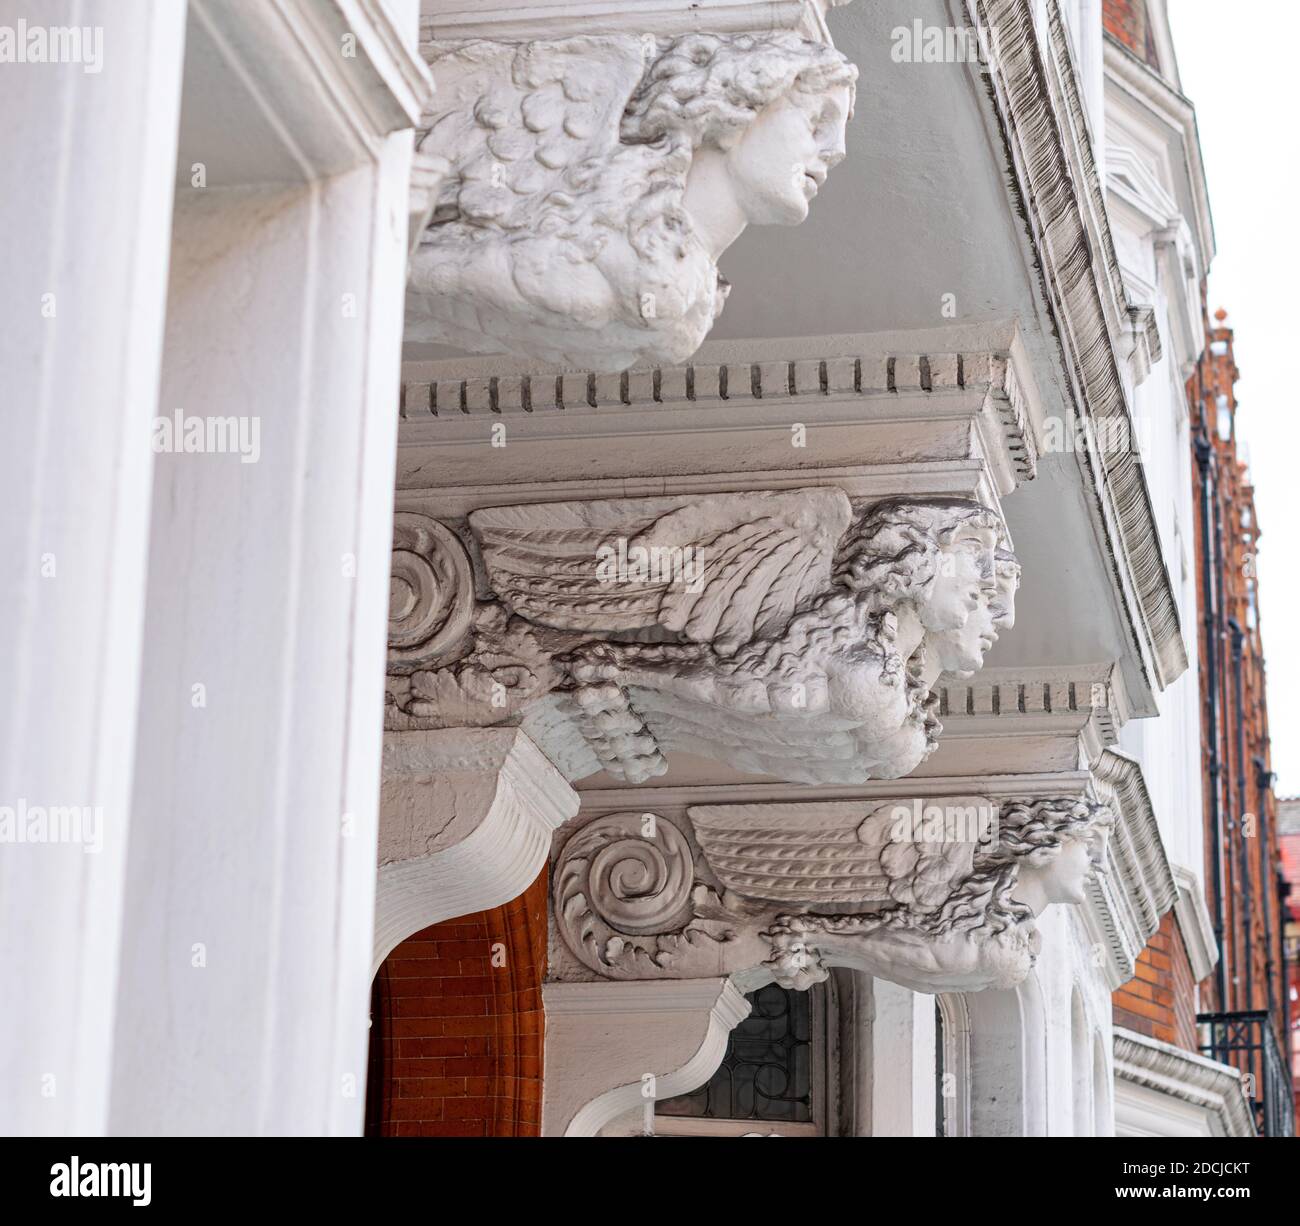 Sphinx comme des figures soutenant le porche des bâtiments de Pont Street, Londres Banque D'Images